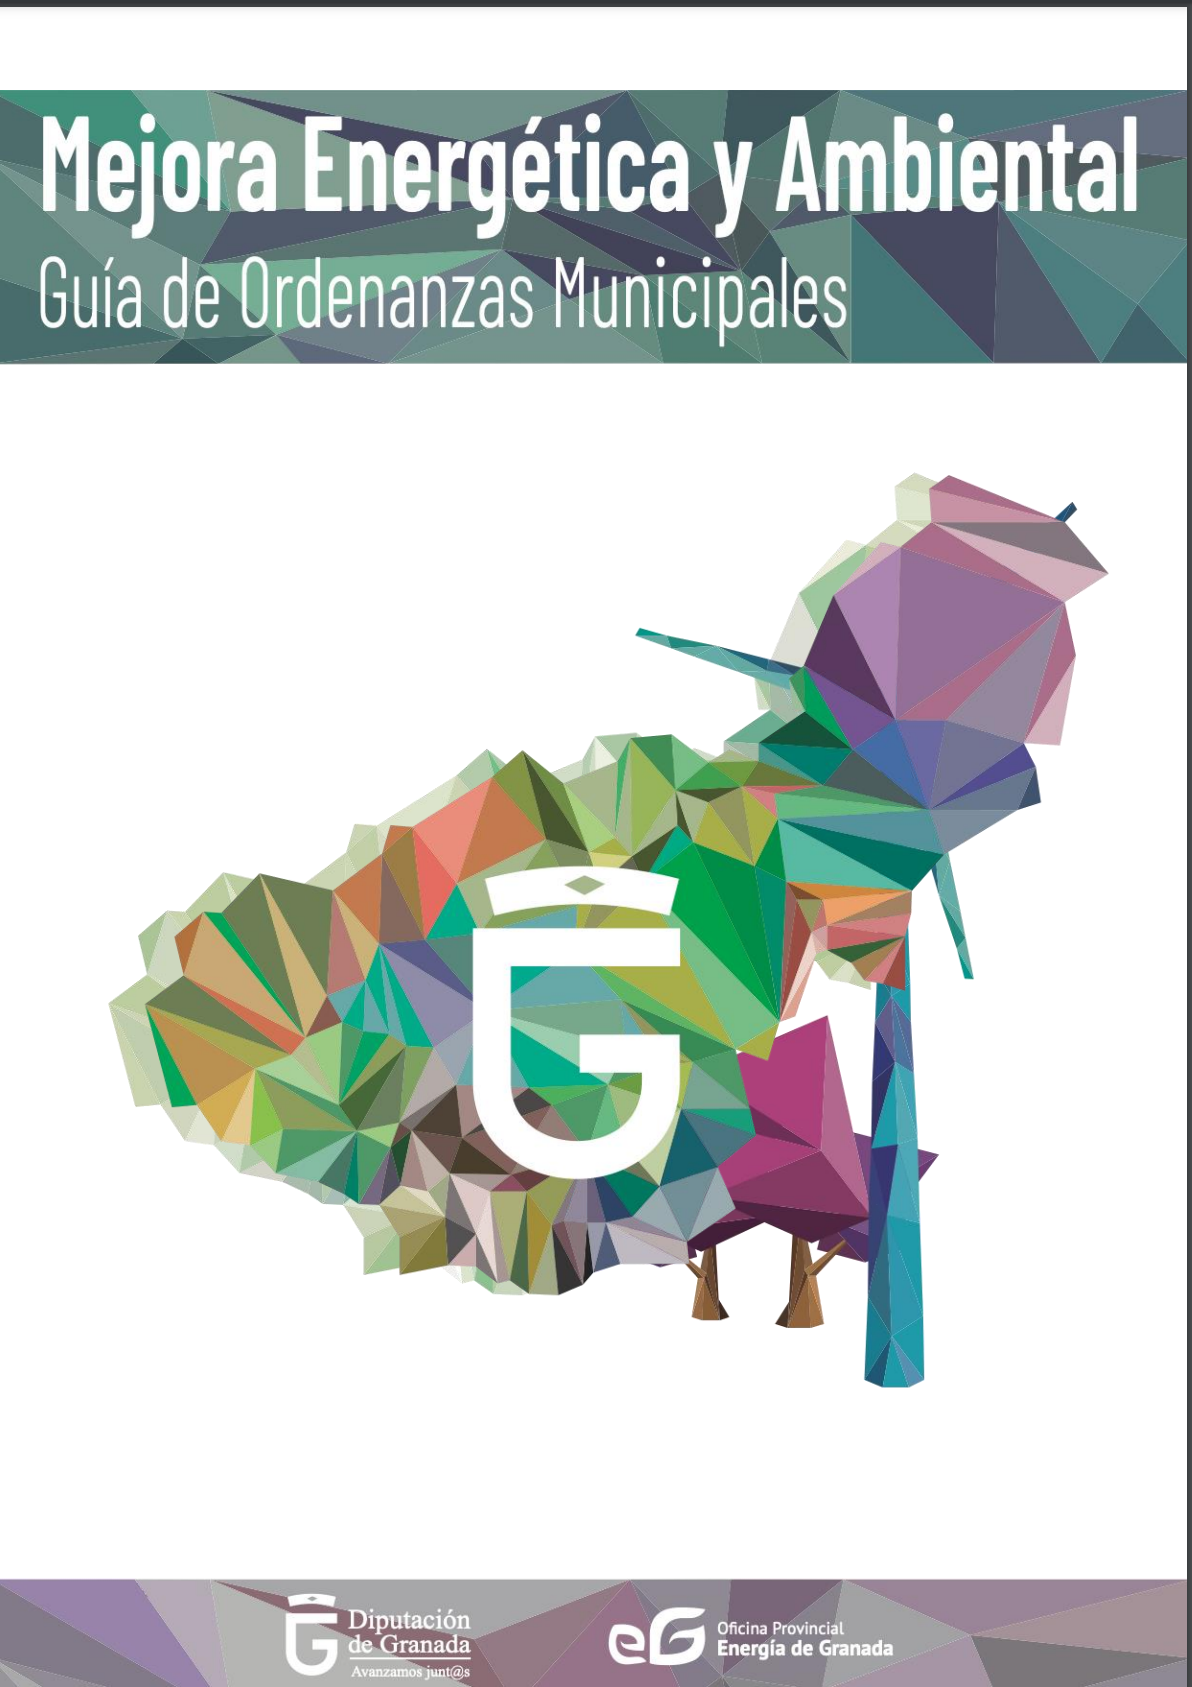 Mejora Energética y Ambiental: Guía de Ordenanzas Municipales. Diputación de Granada.